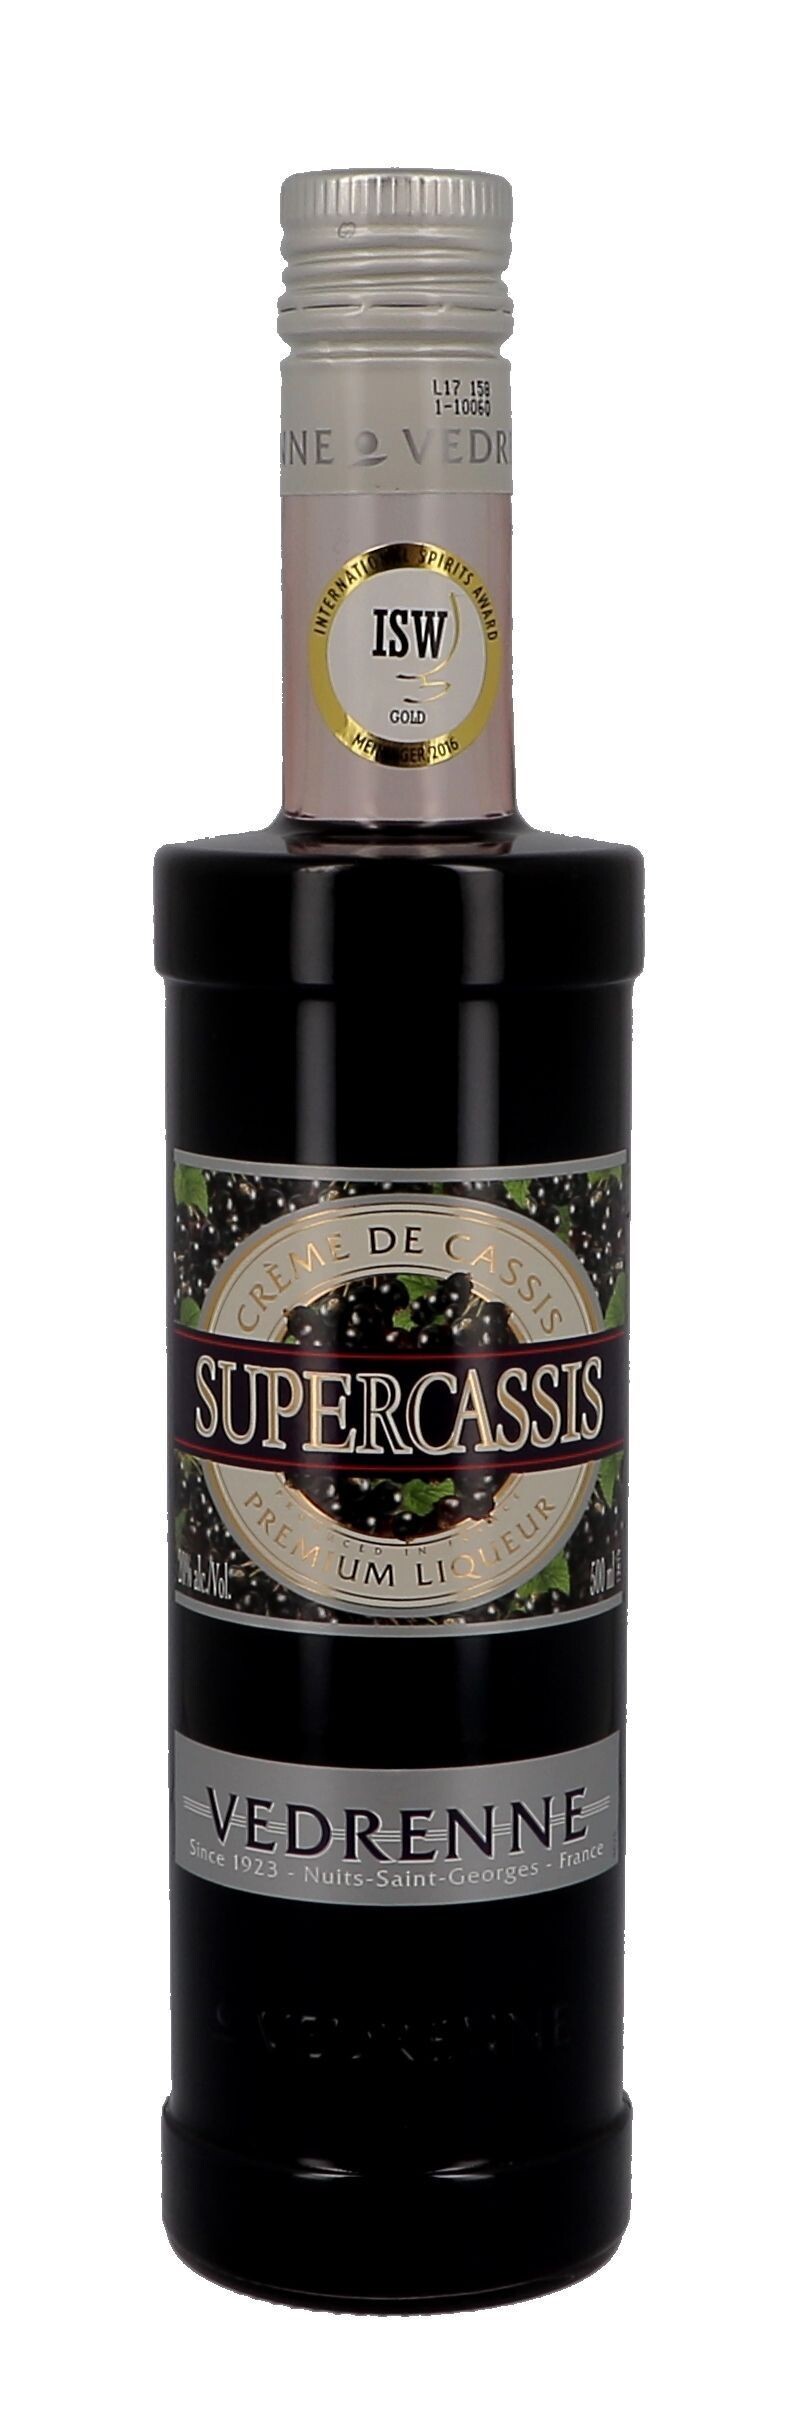 Vedrenne Supercassis Creme de Cassis 50cl 20% Blackcurrant Liqueur